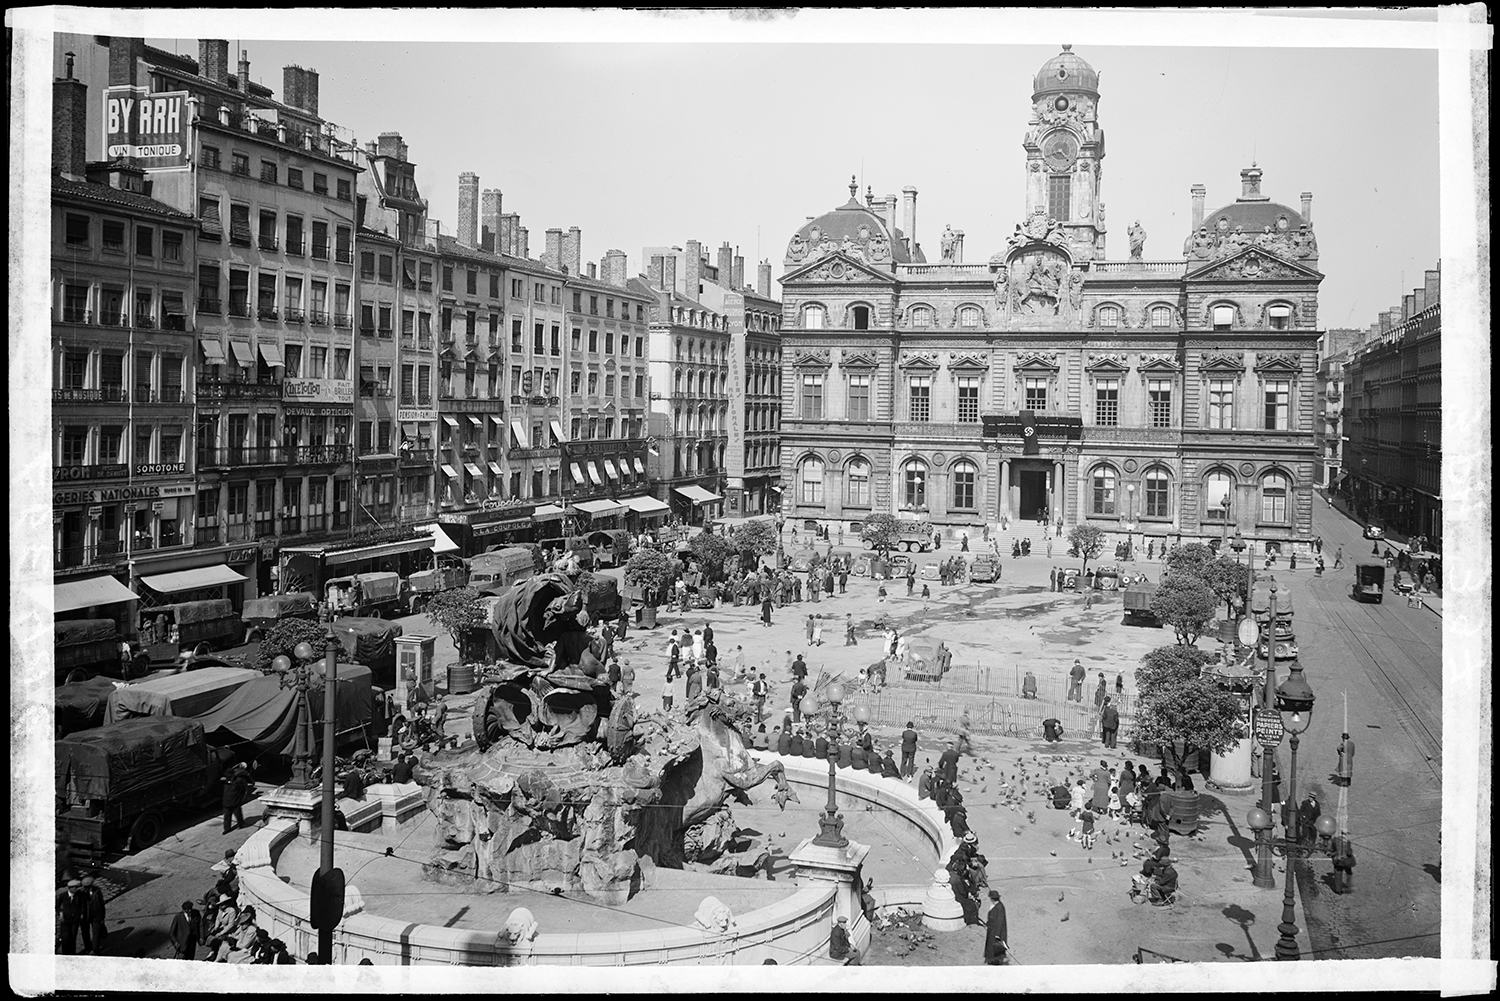 Lyon est occupée, une croix gammée a été accrochée au balcon de l’Hôtel de Ville. Juin-juillet 1940 Négatif sur verre, détail - 3PH/397